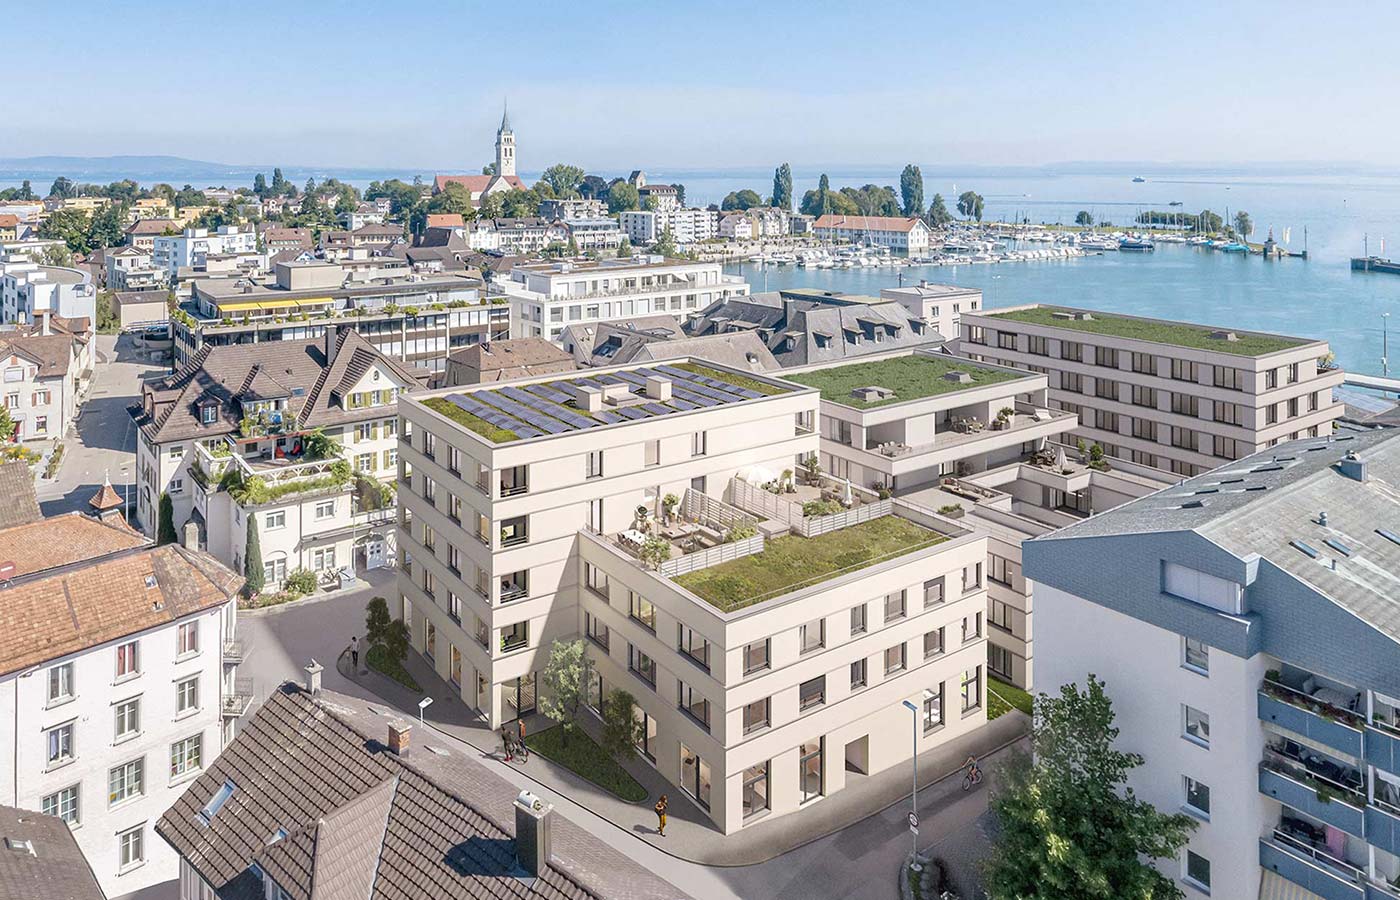 Immobilienvisualisierung vom Bauprojekt Stepcube in Romanshorn, Ansicht von Aussenvisualisierung und Bodensee.